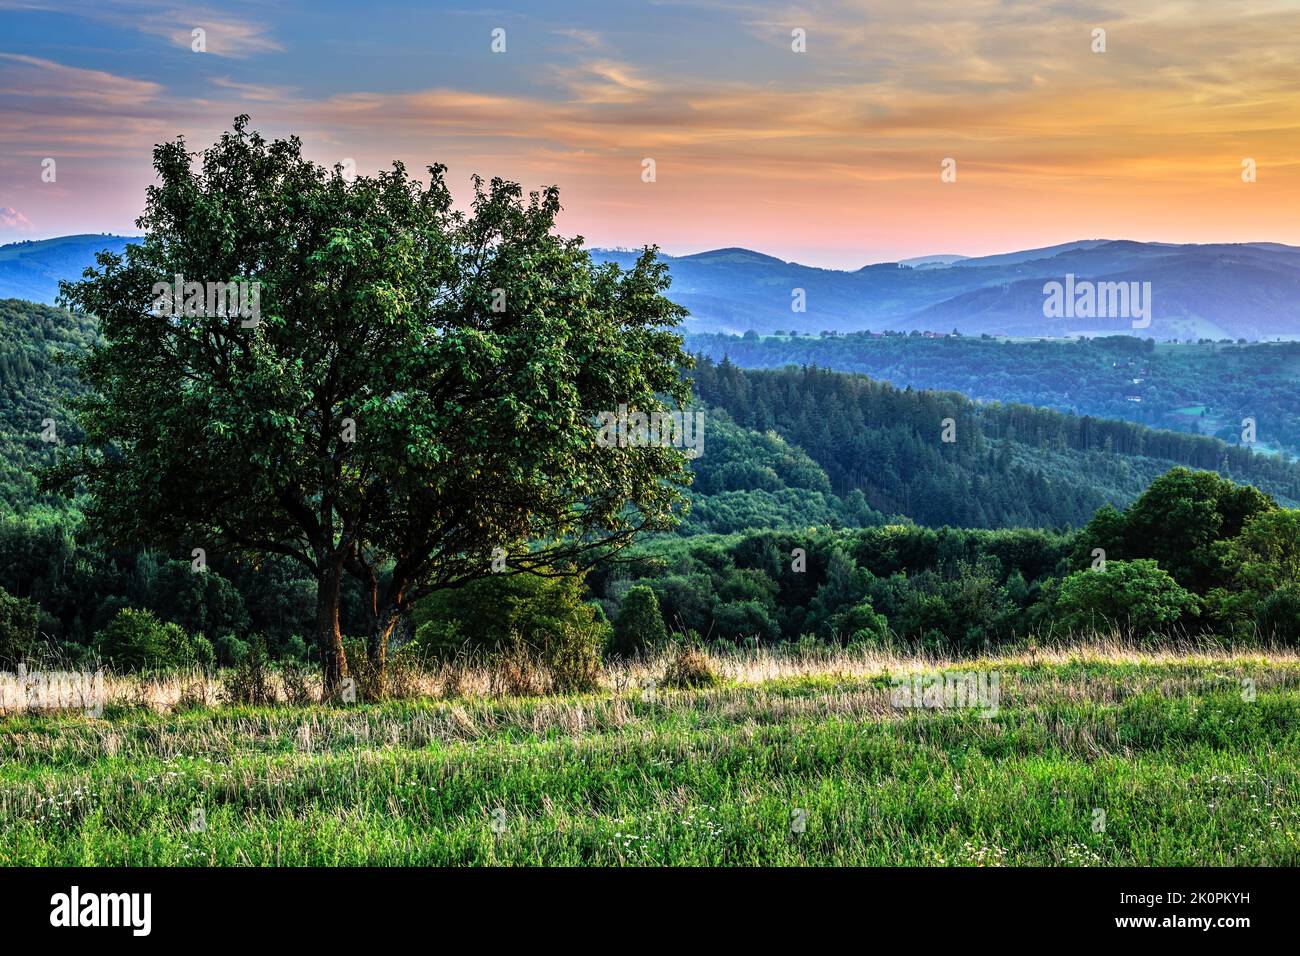 Sommer ländliche hügelige Landschaft mit Baum und Wald nach Sonnenuntergang. Abend in der Abenddämmerung. Schöne bunte Wolken am blauen Himmel. Horna Suca, Slowakei. Stockfoto